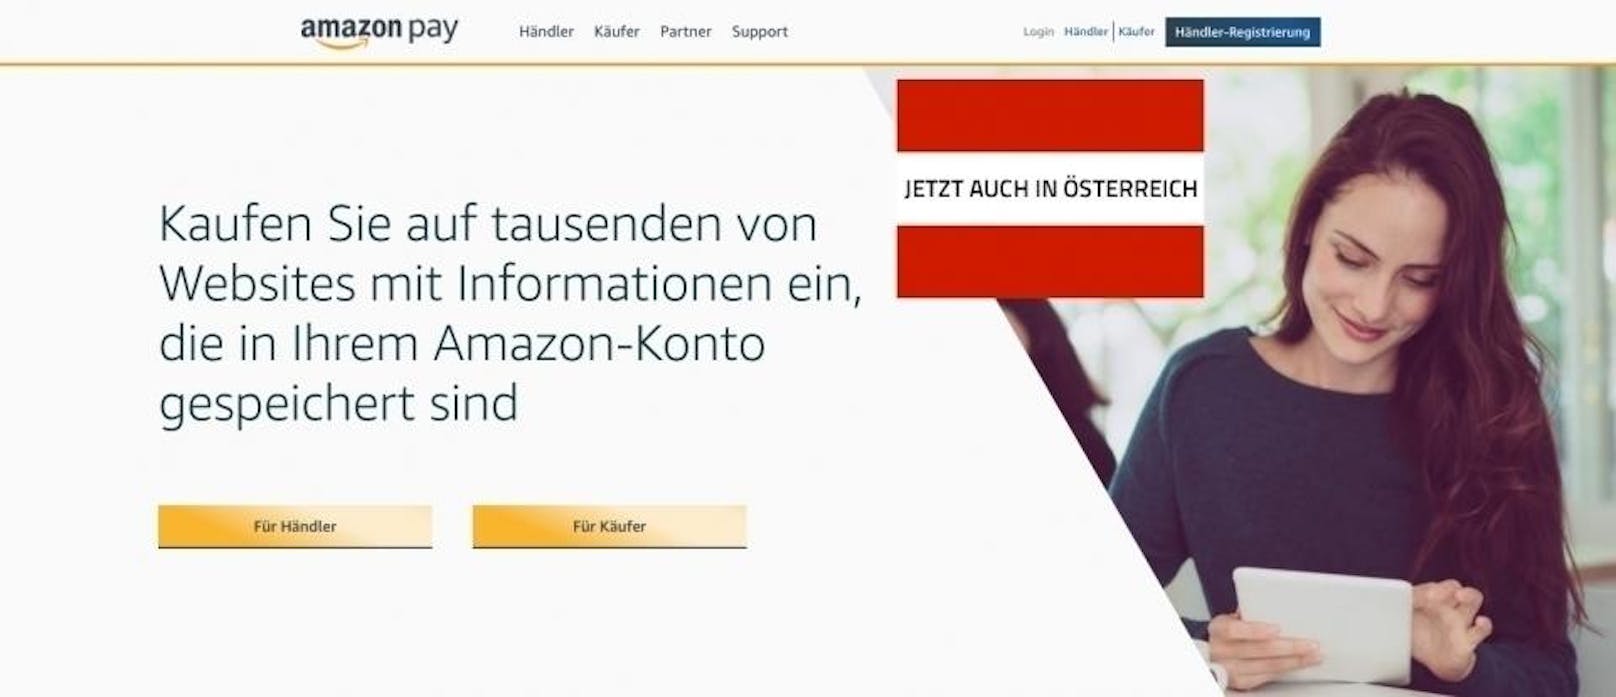 Seit April können Kunden mit Amazon Pay in Österreich mit den Informationen, die bereits in ihrem Amazon-Konto hinterlegt sind, in Shops von Drittanbietern bequem Waren und Dienstleistungen bezahlen, ohne dafür ein neues Konto anzulegen. Dies ist ab sofort auch bei Einkäufen möglich, die per Sprache getätigt werden. Denn Anbieter von physischen Gütern oder Dienstleistungen wie Veranstaltungstickets, Fahrkarten oder Blumen können Amazon Pay nun in ihren Alexa Skill integrieren. In Österreich befindet sich Amazon Pay für Alexa Skills aktuell in einer Developer Preview und wird später in diesem Jahr öffentlich verfügbar sein. <a href="https://pay.amazon.com/at/developerpreview">Händler können sich unter hier für die Preview registrieren.</a>